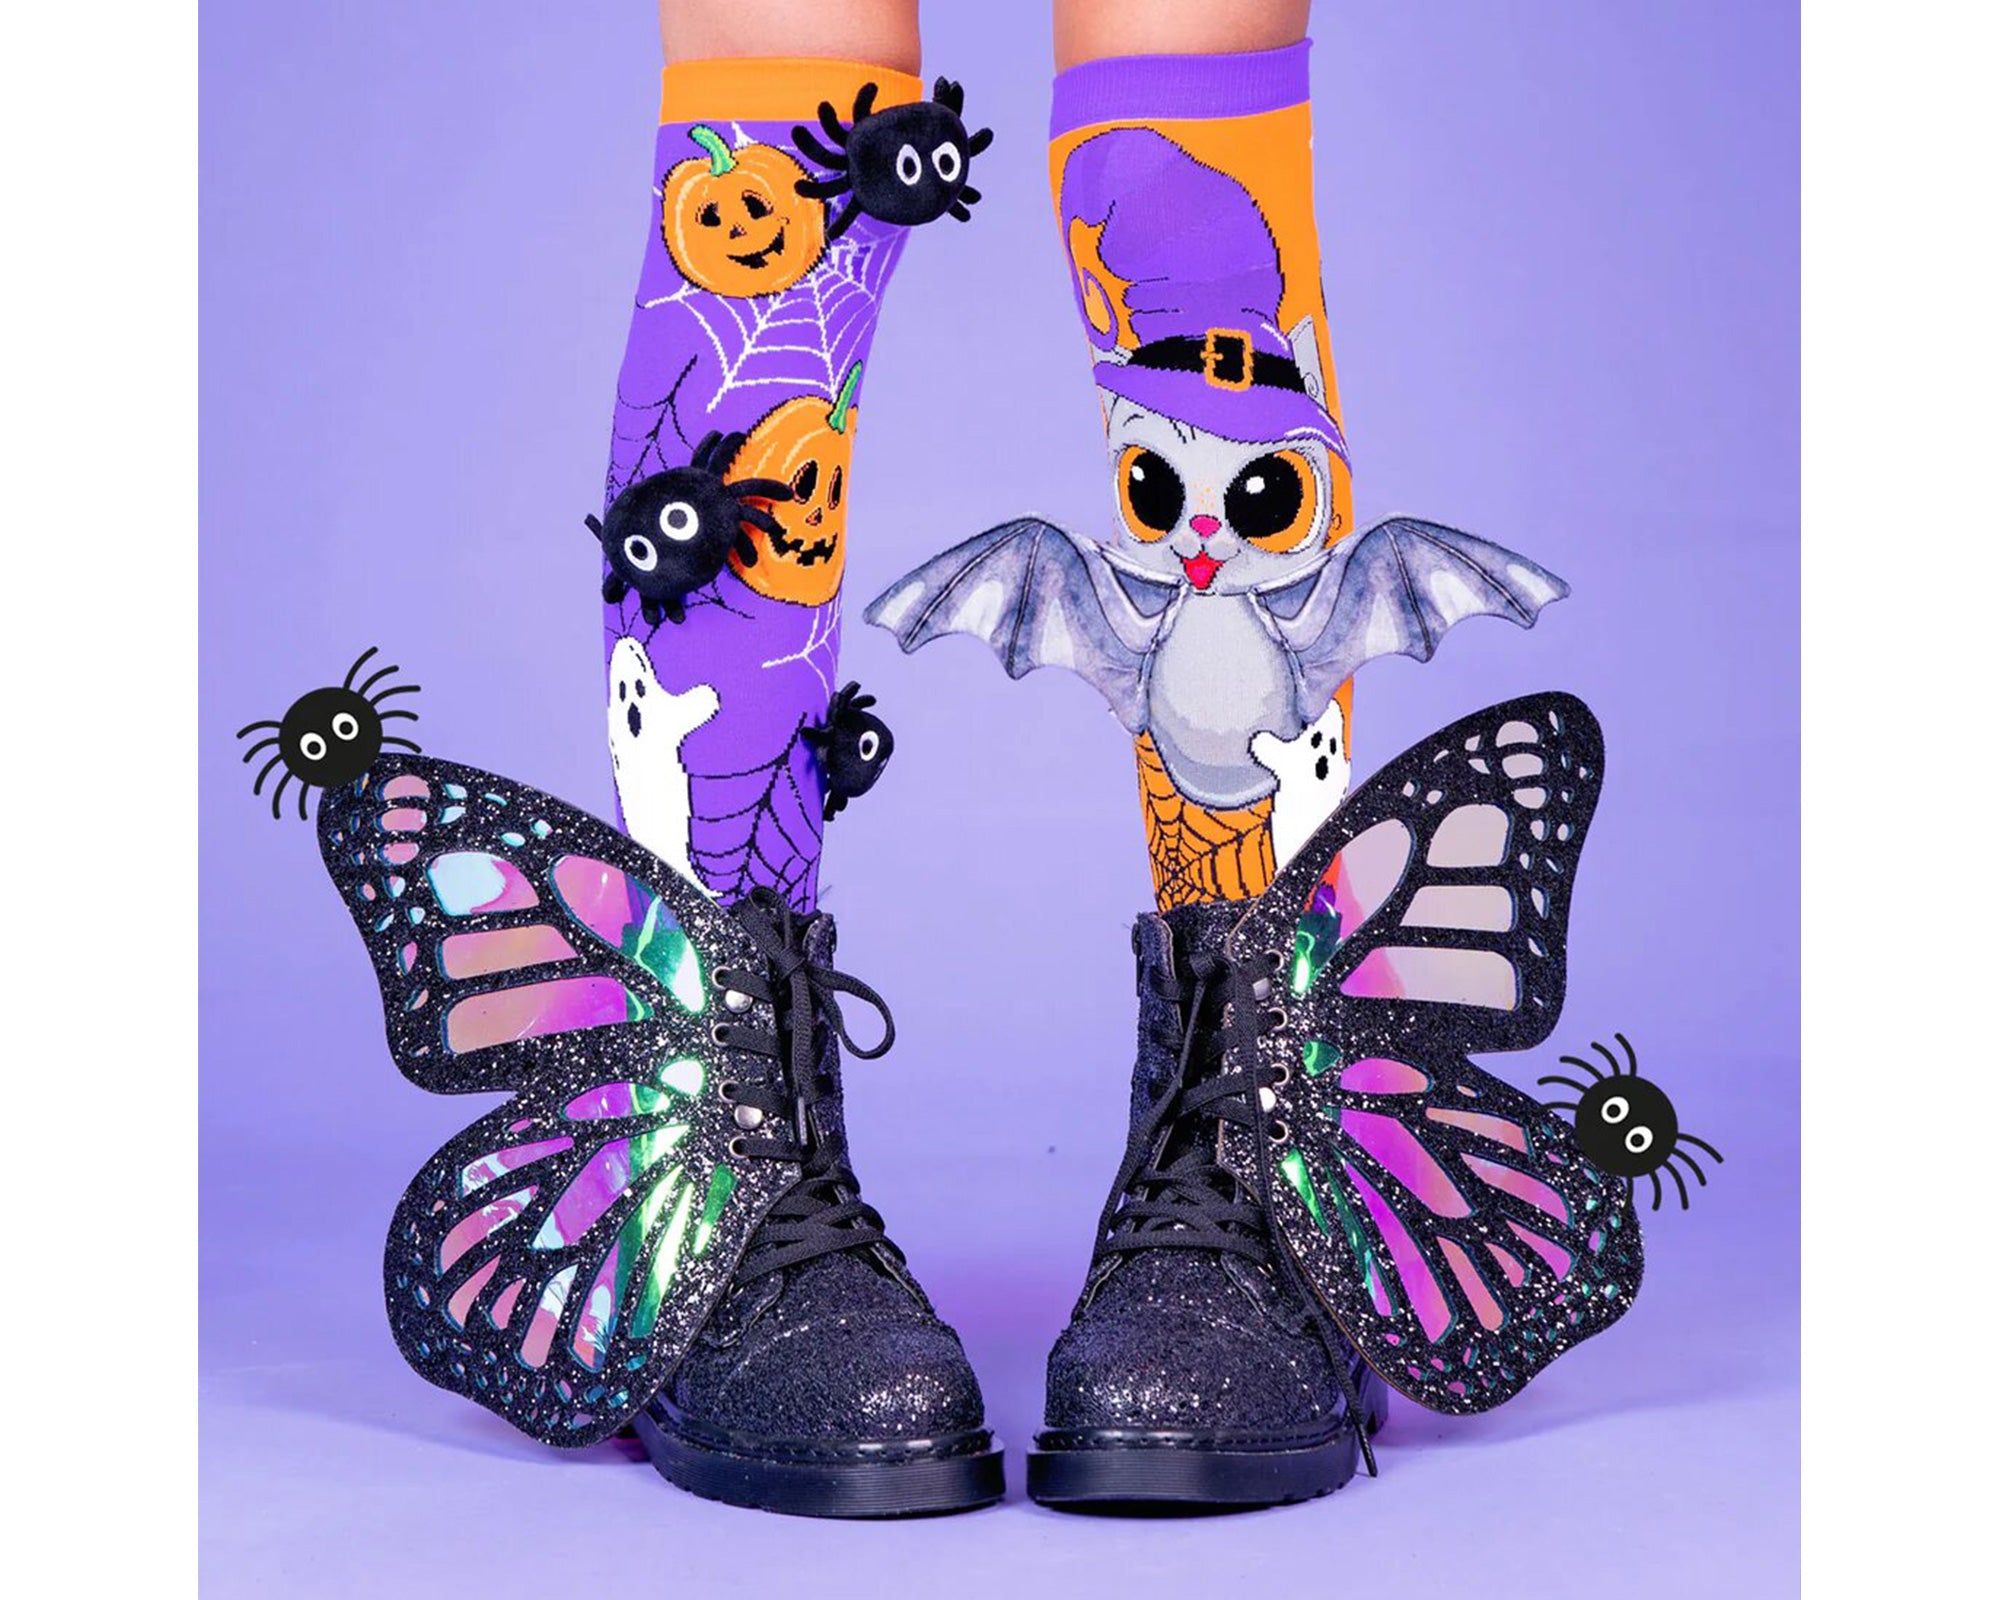 Embrassez la magie du cadeau avec nos nouvelles chaussettes d'Halloween. Avec des araignées en peluche 3D et des ailes de chauve-souris attachées sur mesure, ces chaussettes sont super amusantes et votre tenue sera la plus cool du moment !  Une bonne gâterie effrayante pour Halloween !